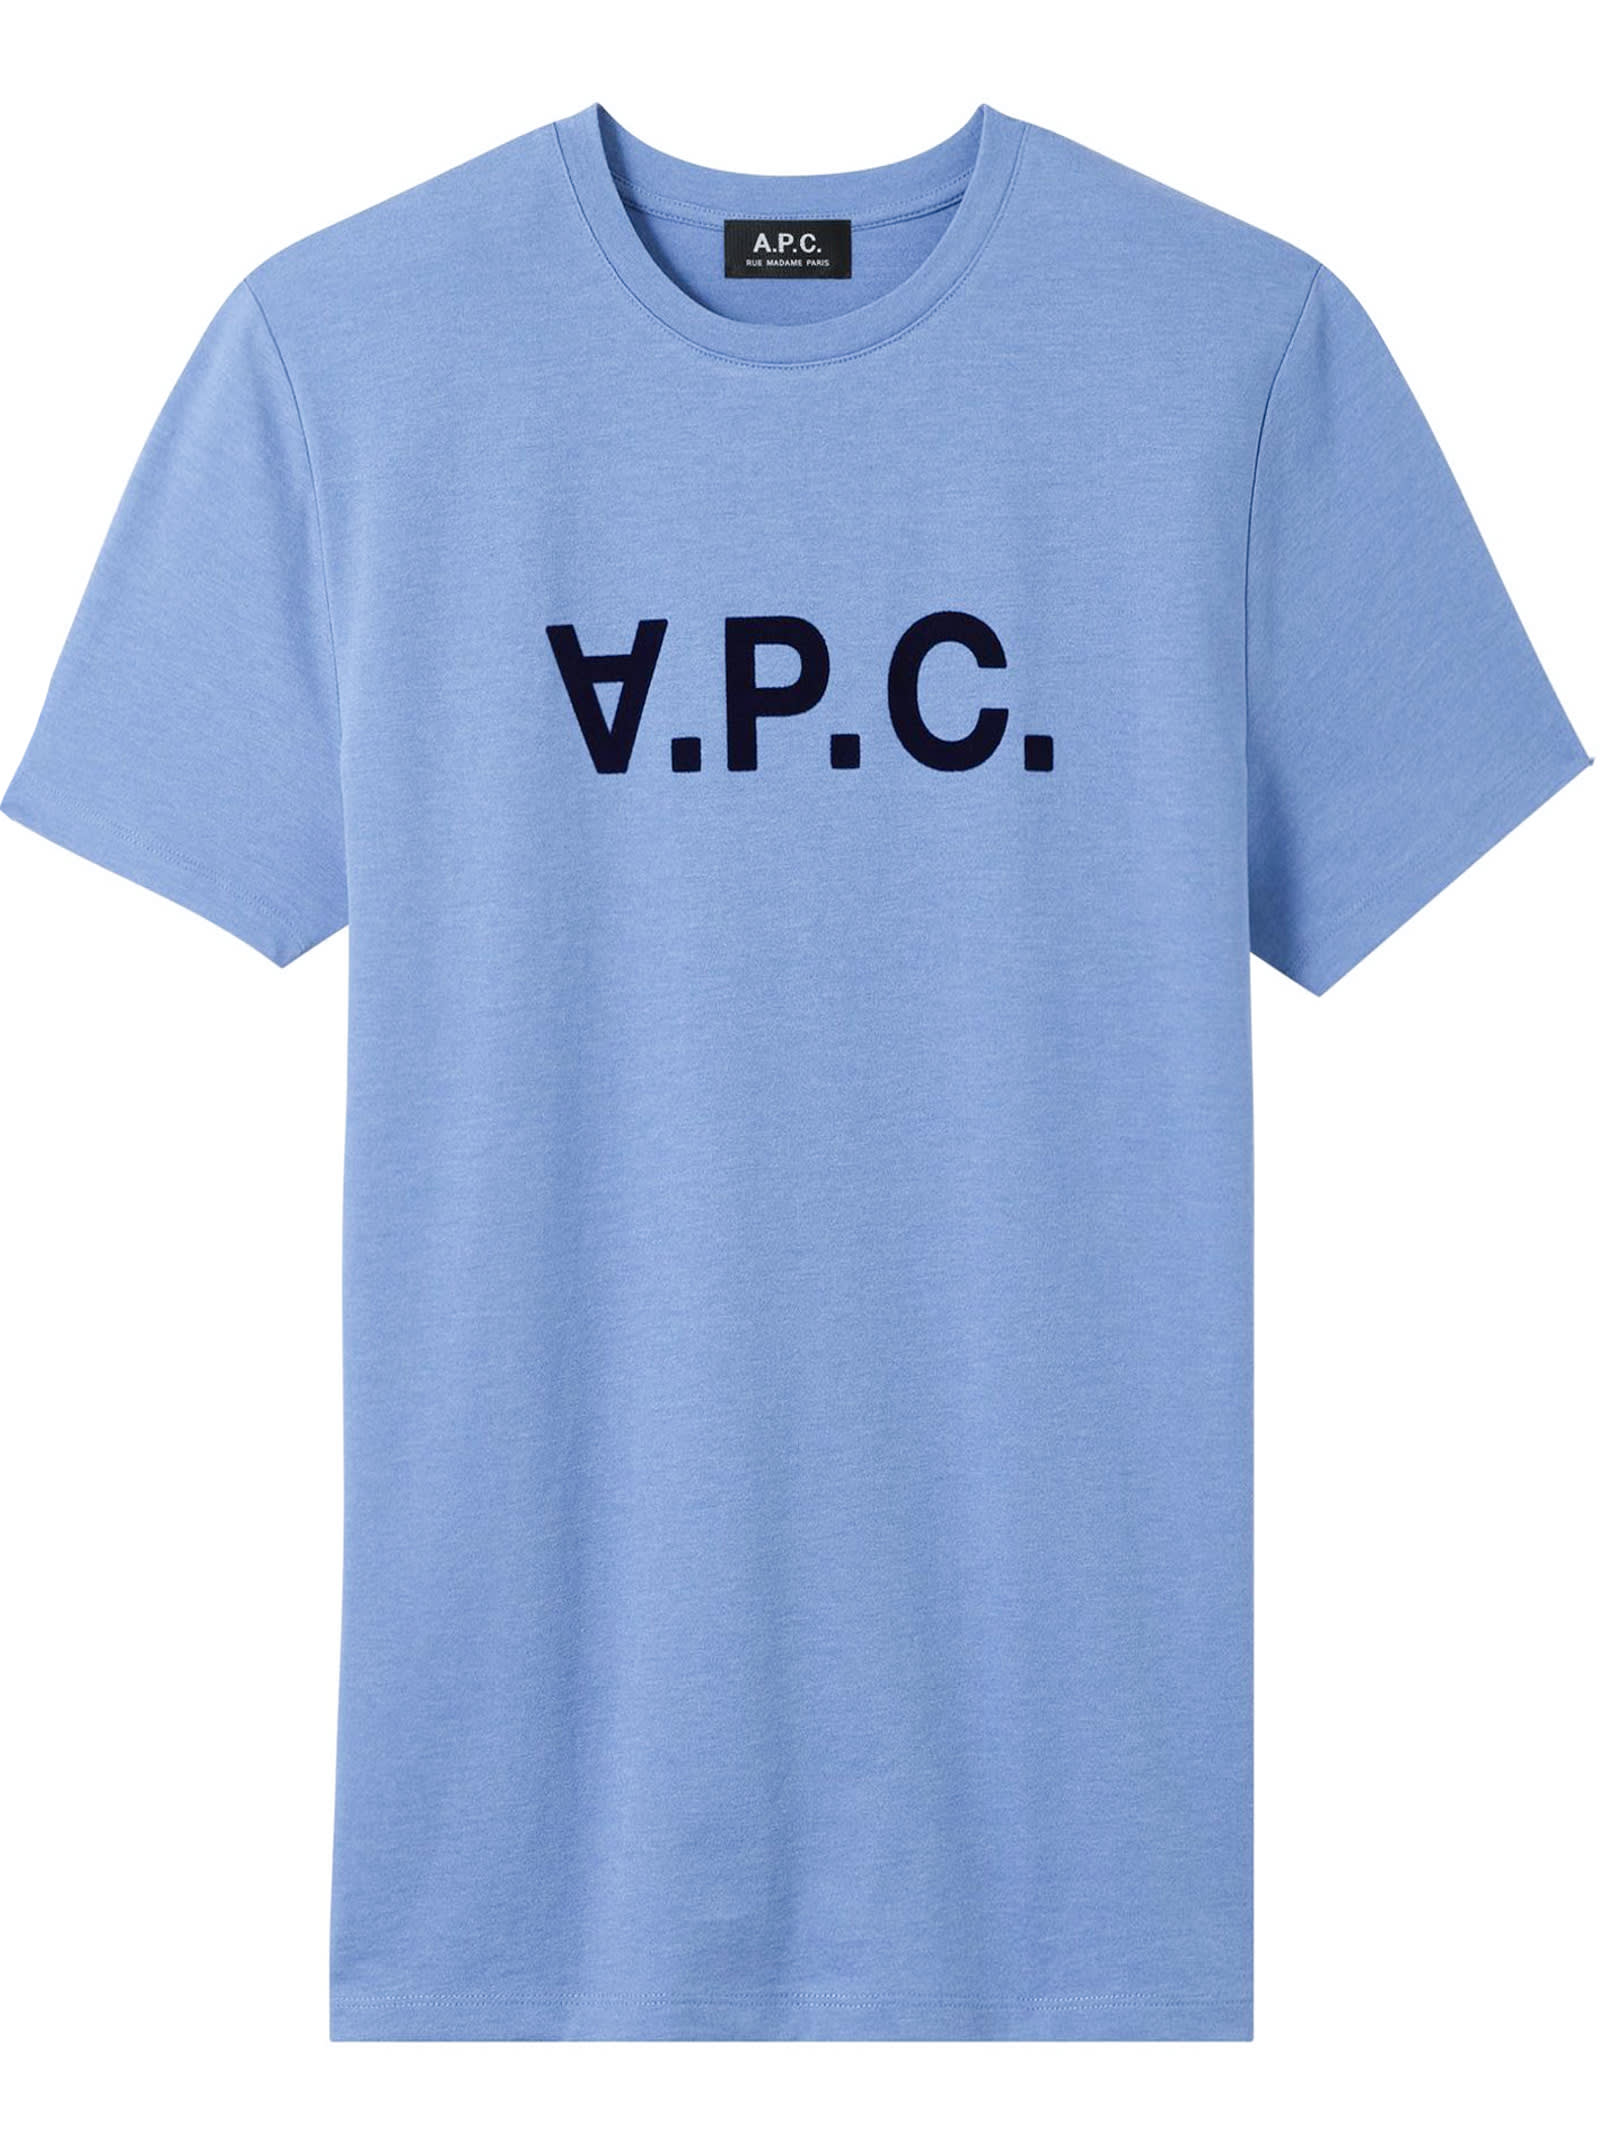 A.P.C. Light Blue Cotton T-shirt